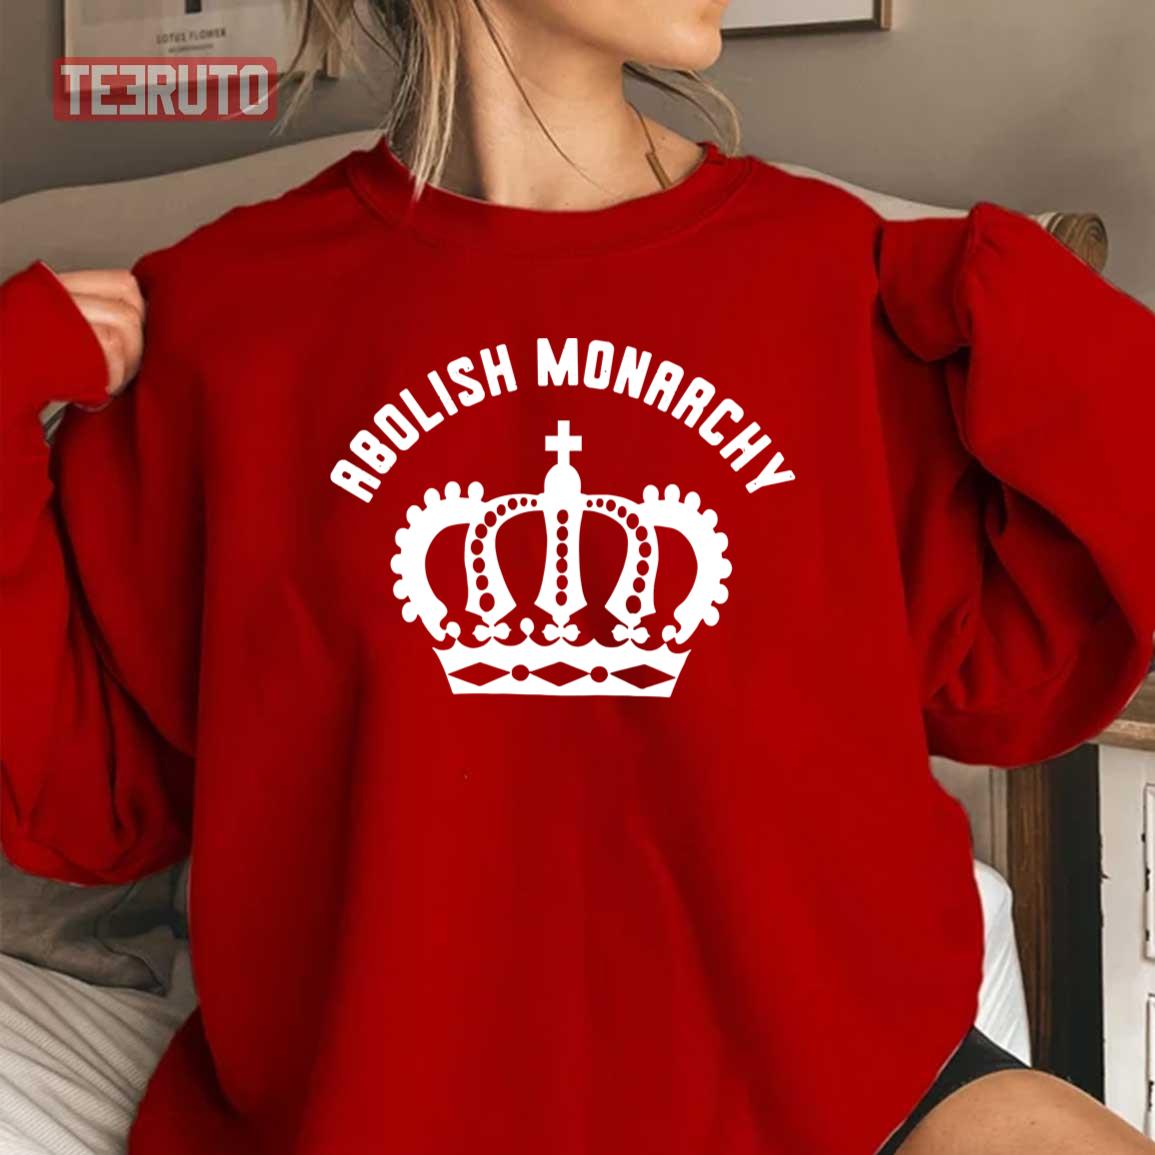 Abolish Monarchy Unisex Sweatshirt